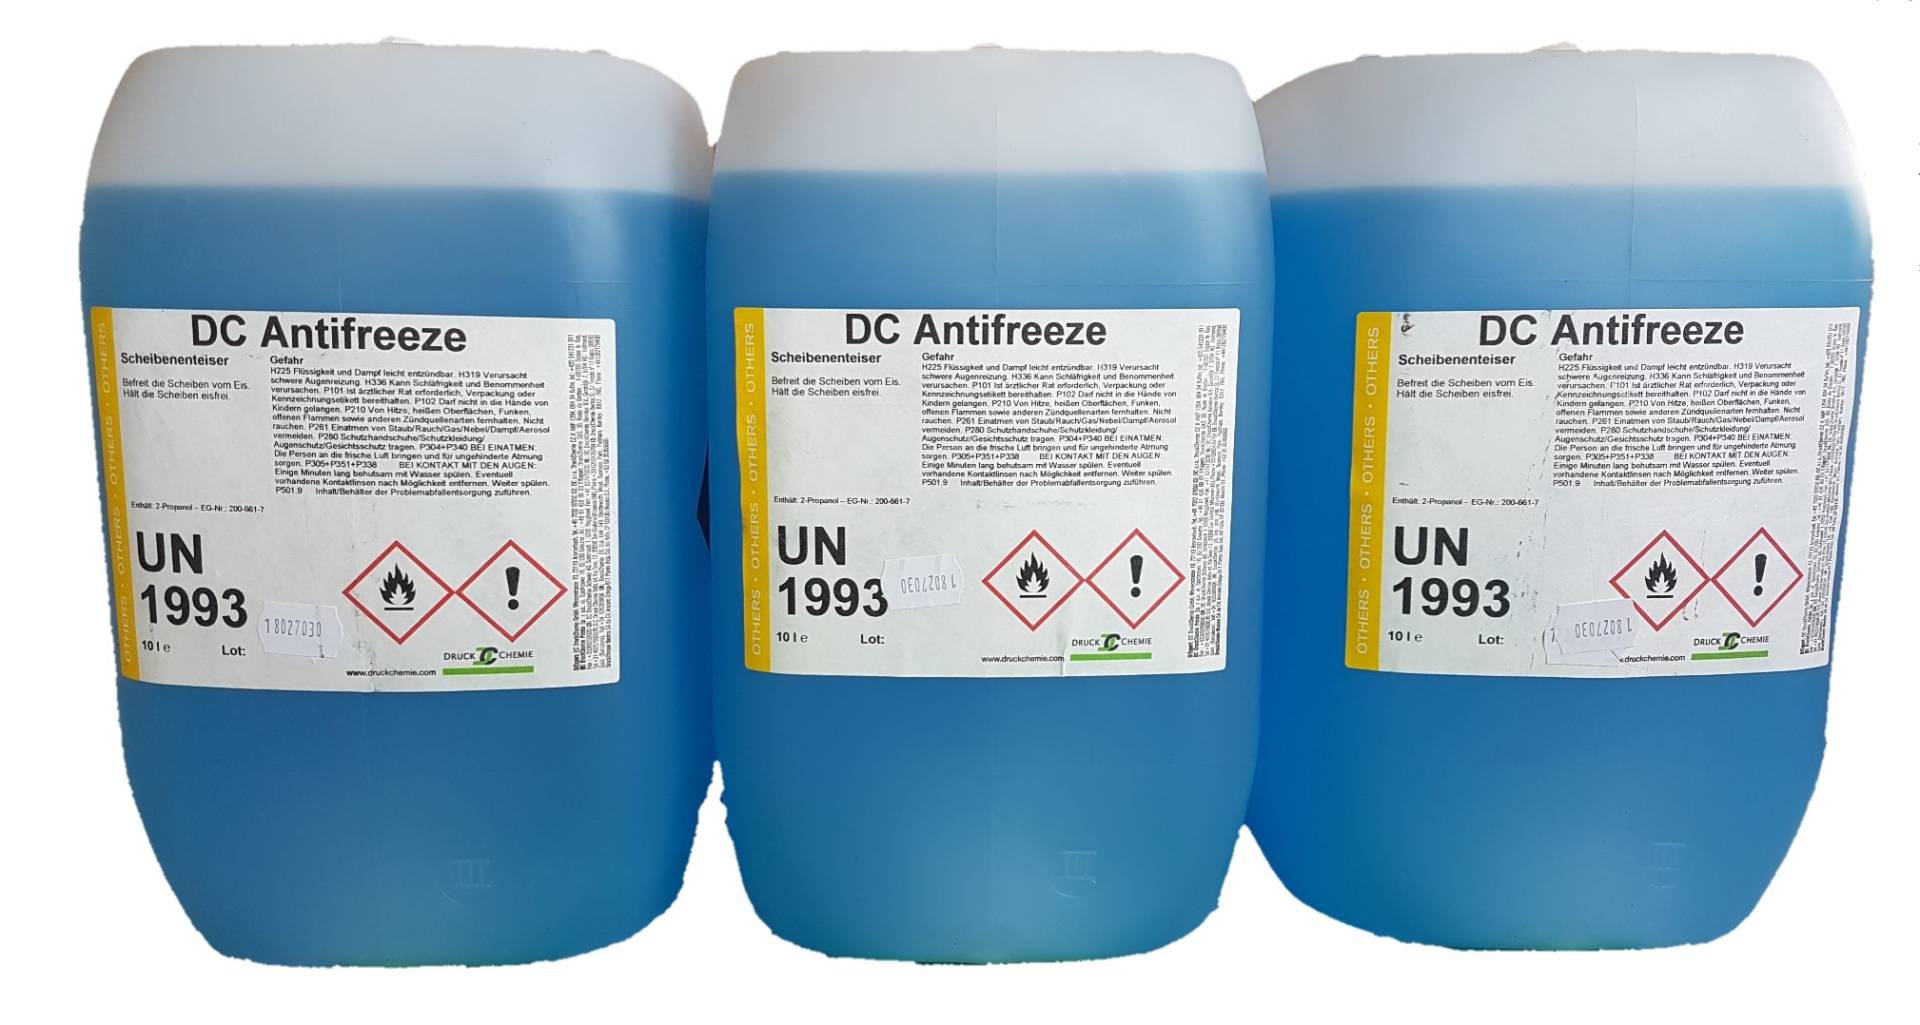 DC Antifreeze Scheibenenteiser 30 Liter Kanister - 3 x 10 Liter Entfroster - Defroster von DC Antifreeze